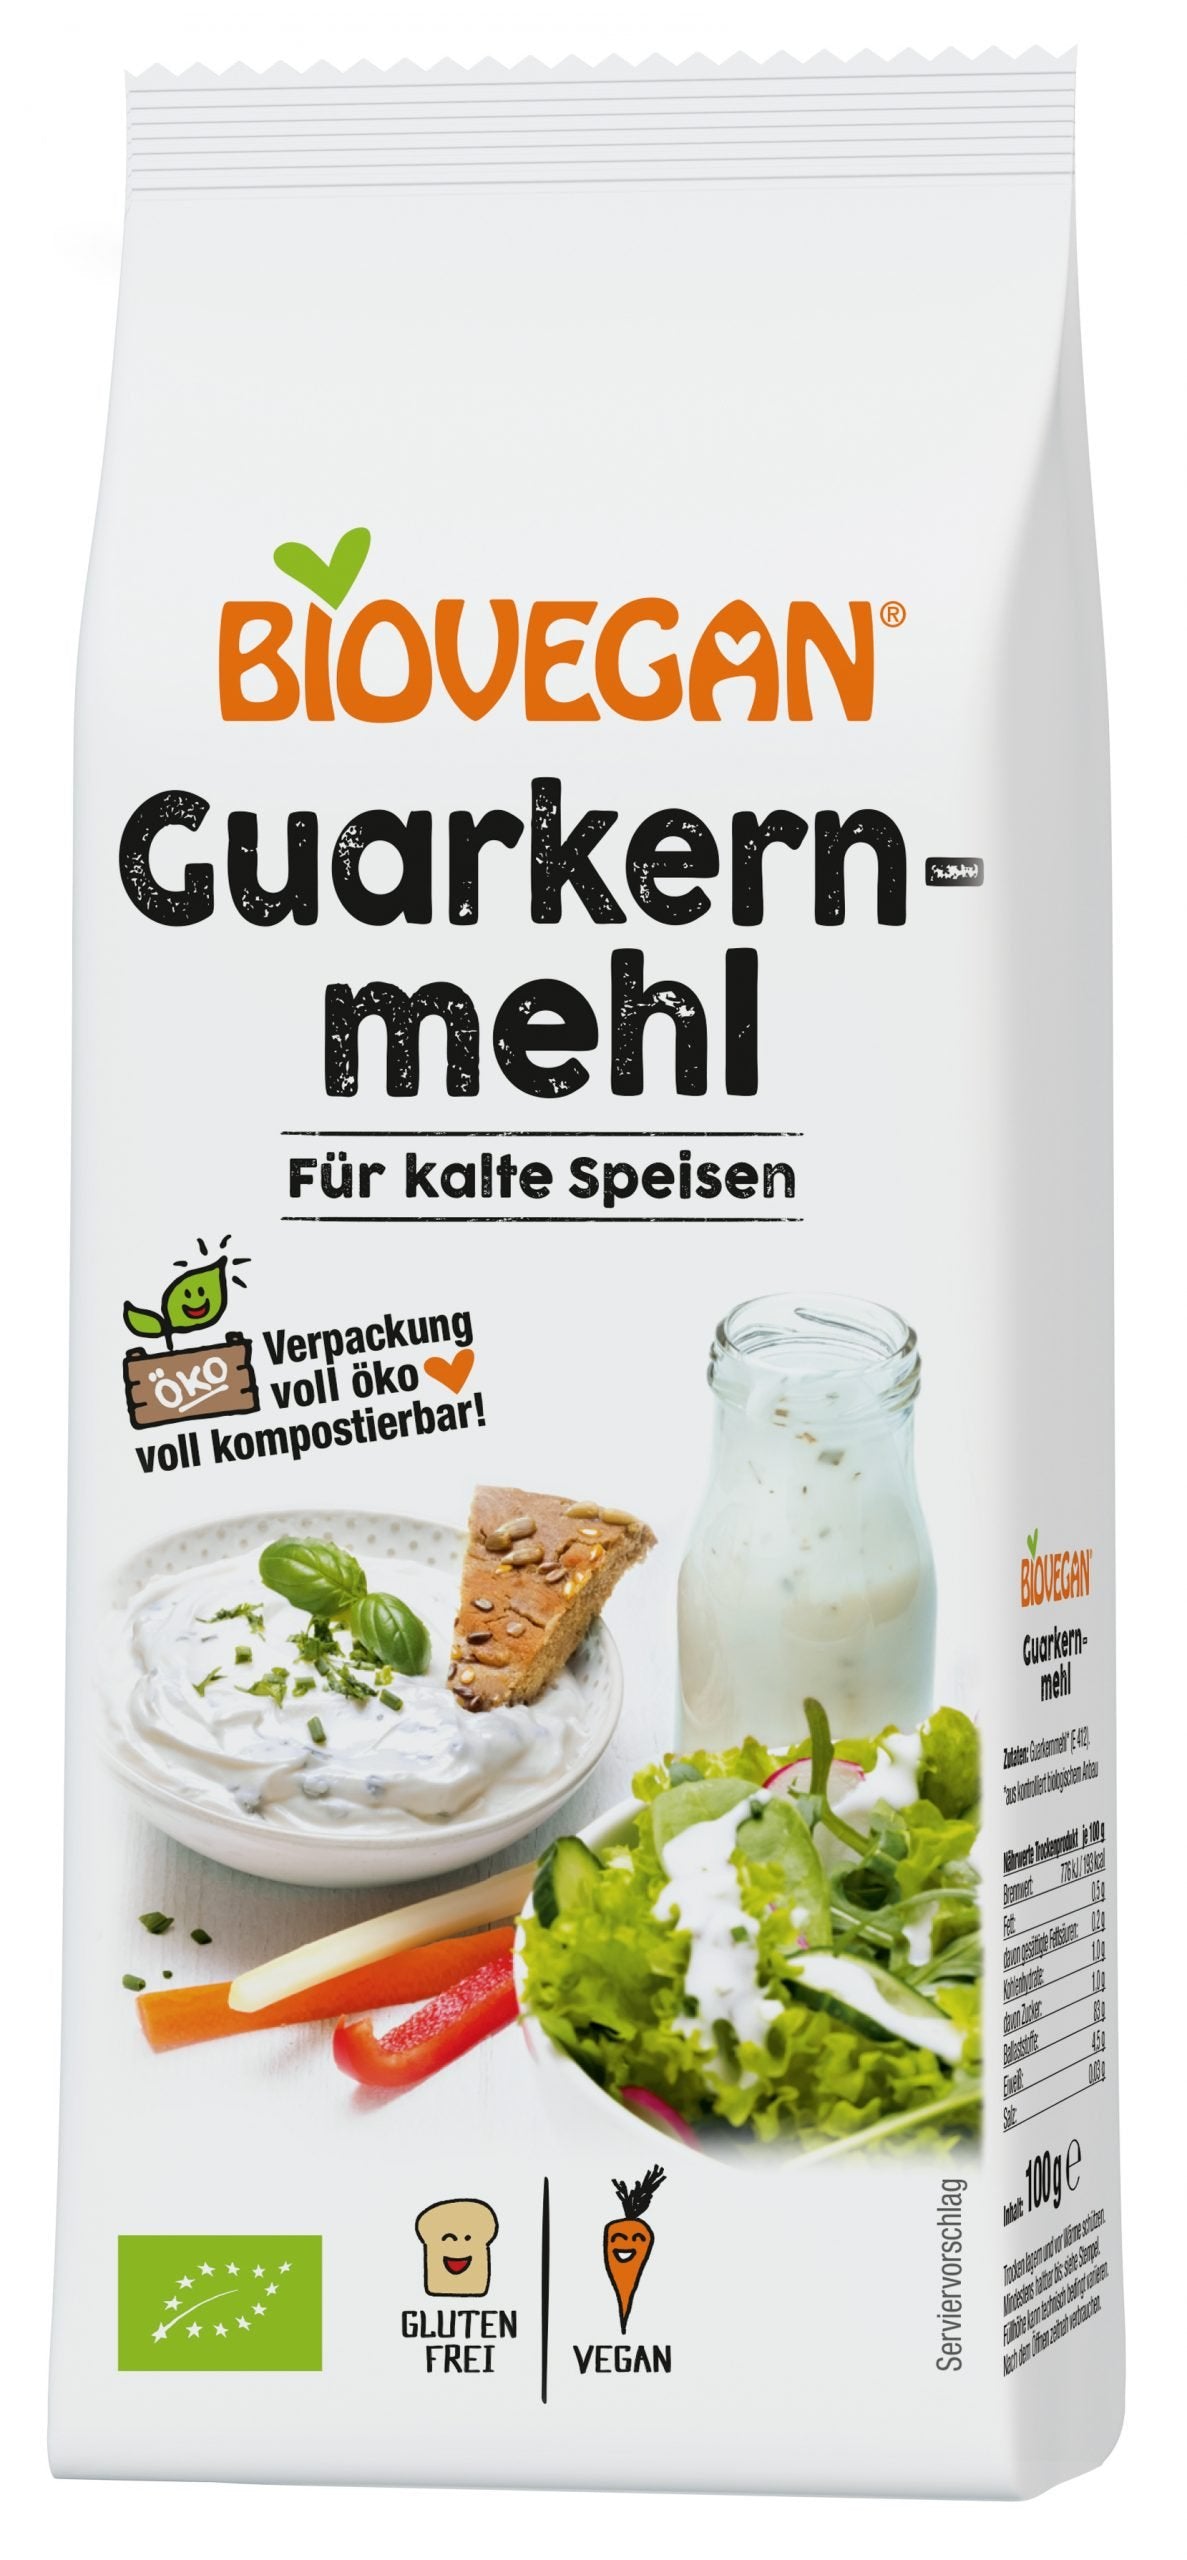 Biovegan Guarkernmehl für kalte Speisen, BIO 100g